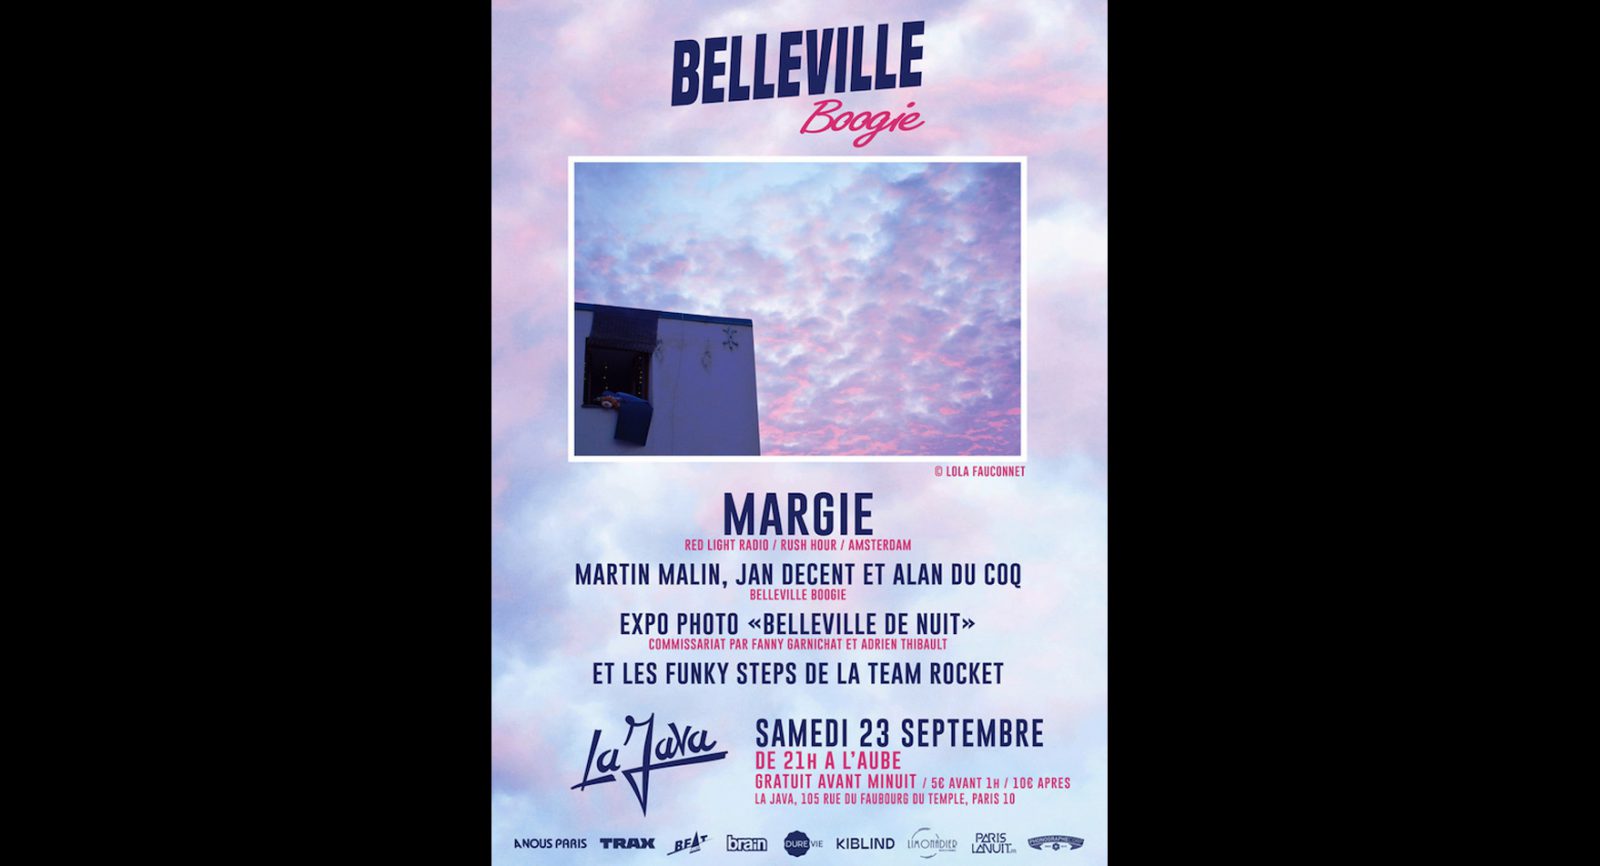 Belleville Boogie w/Margie